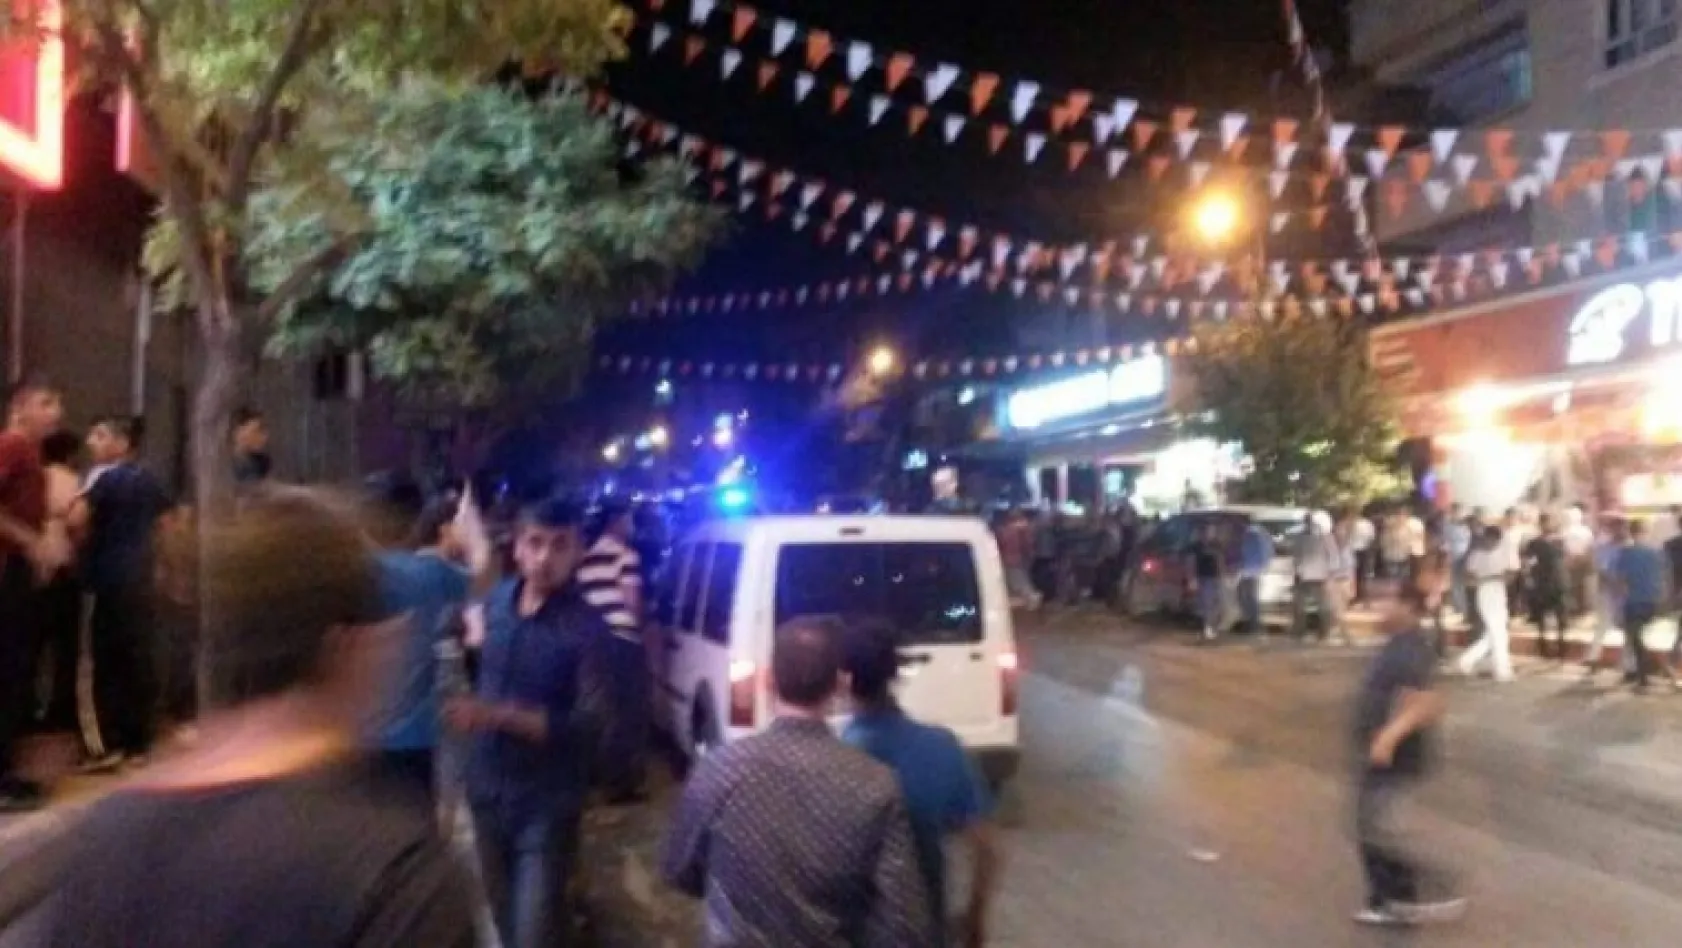 Gaziantep'te bombalı saldırı